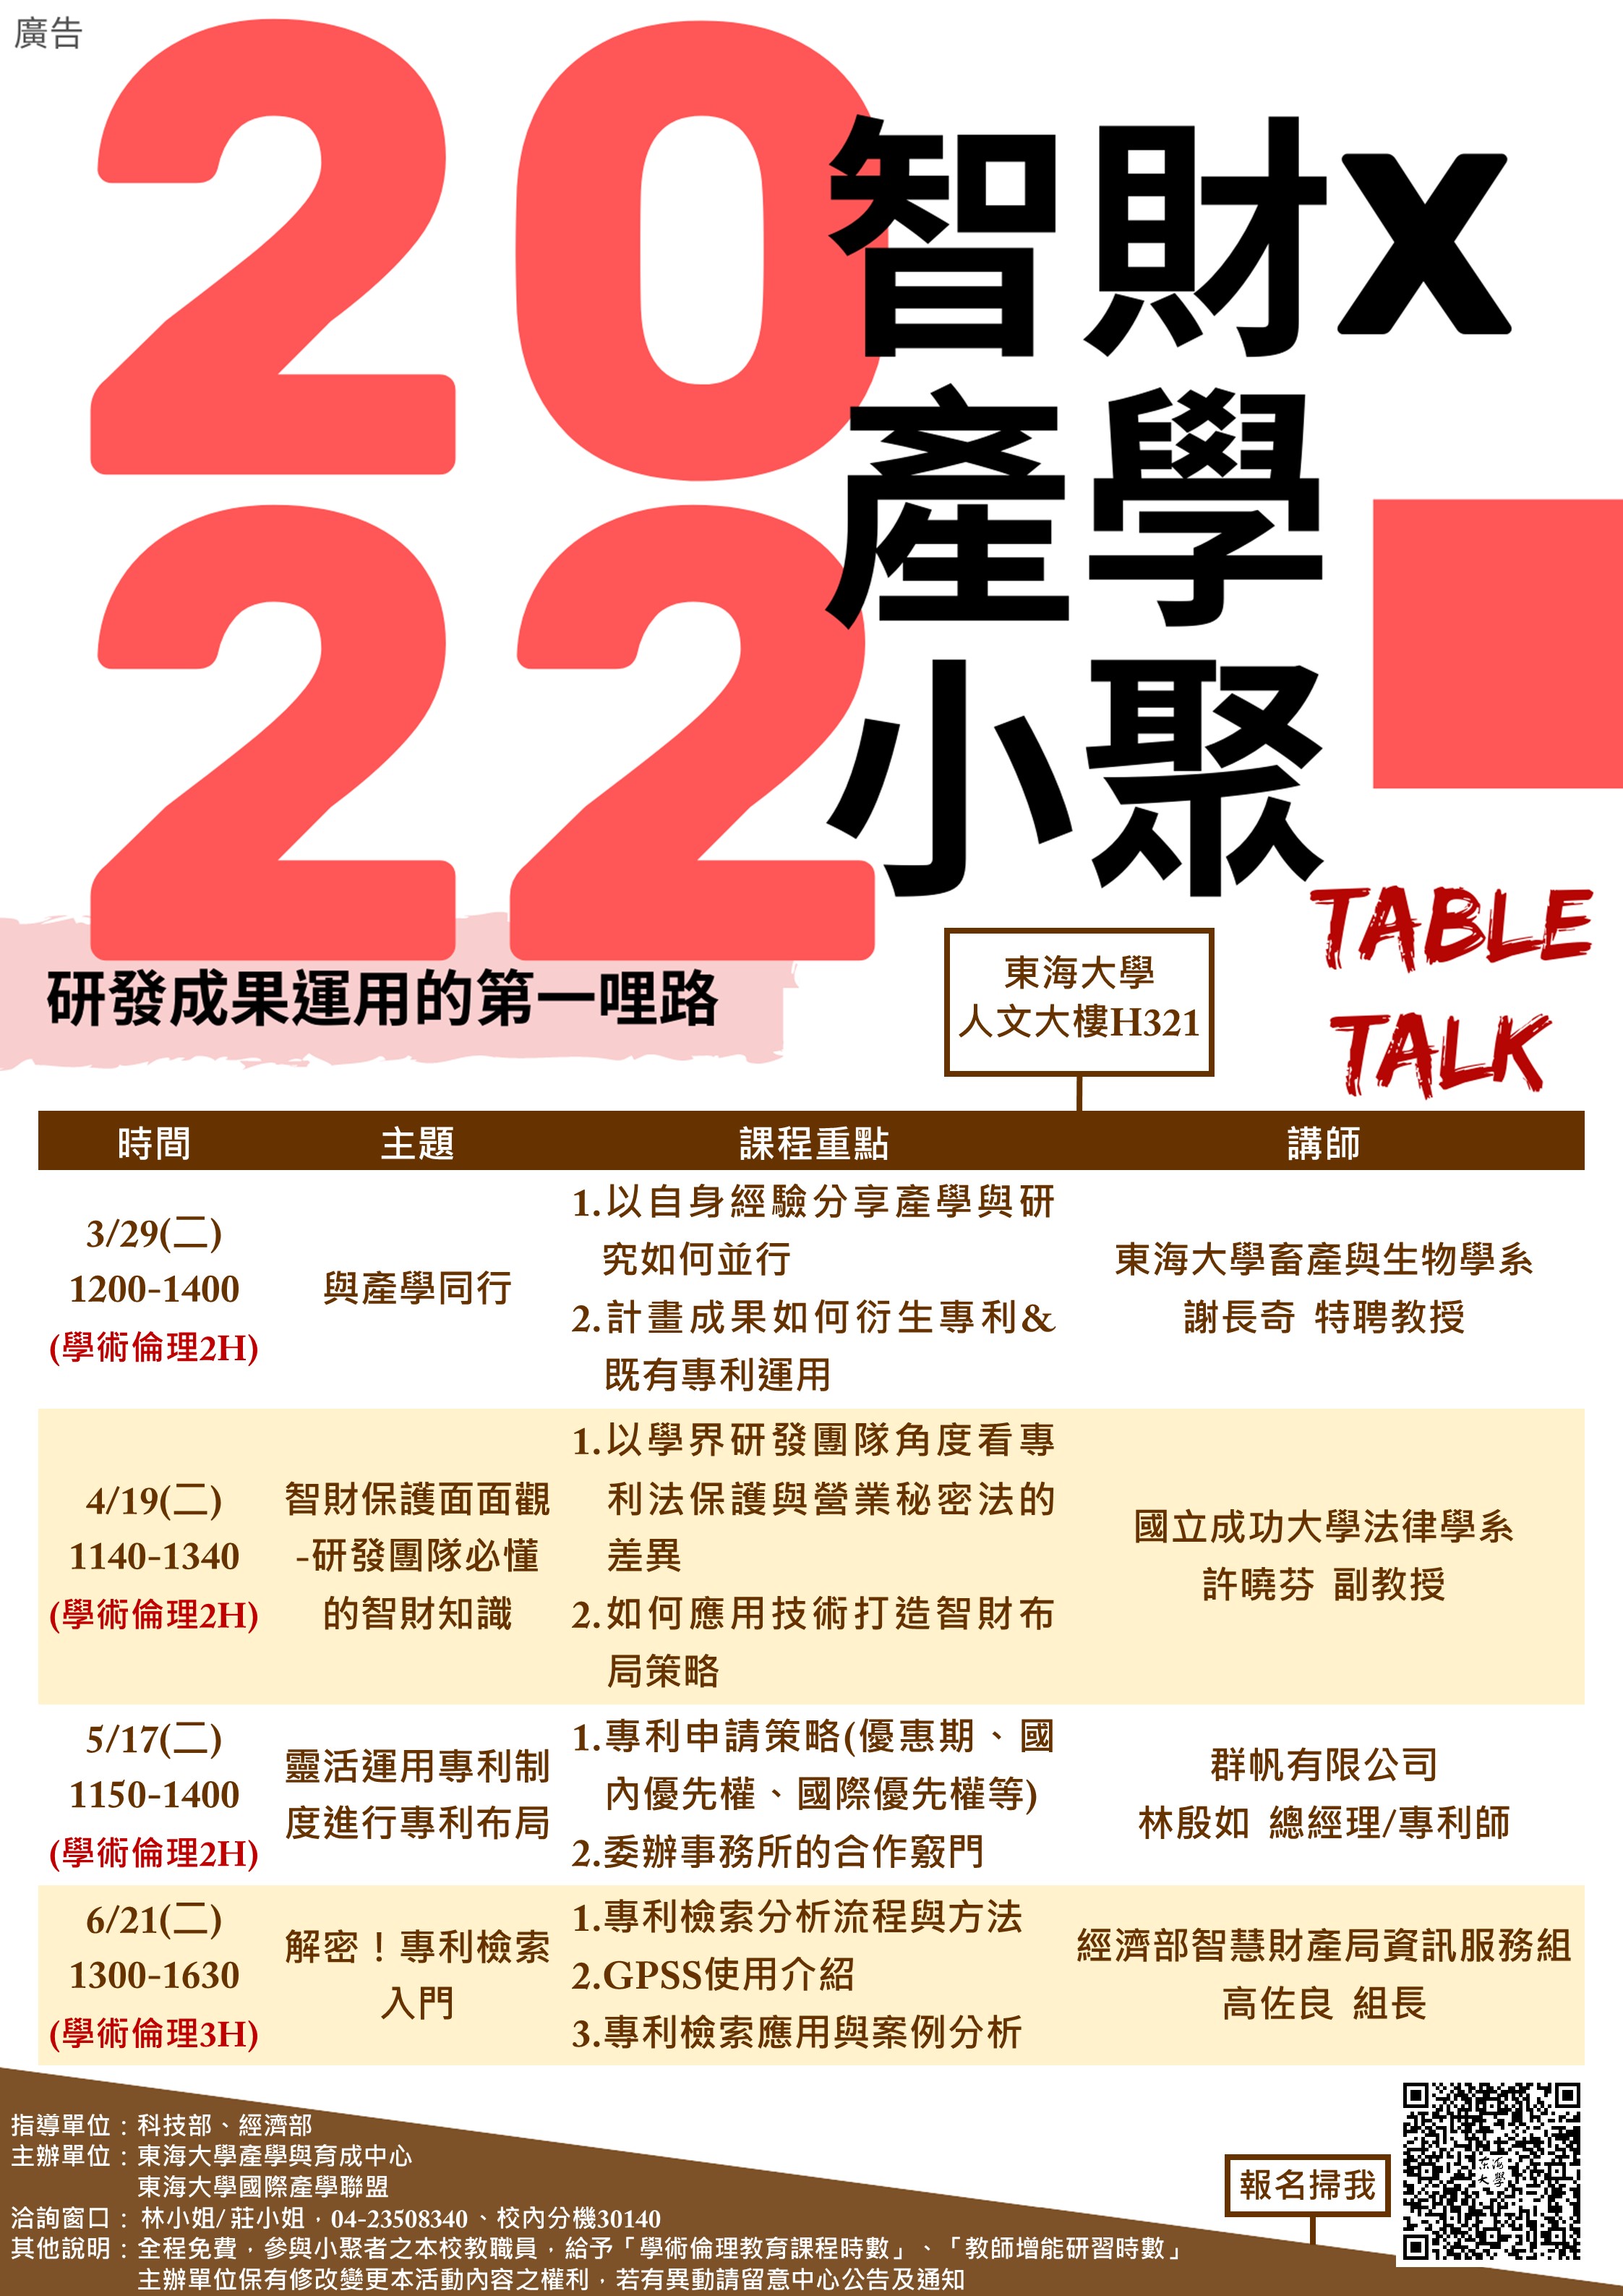 【研發成果運用的第一哩路】Table talk｜2022智財x產學小聚  